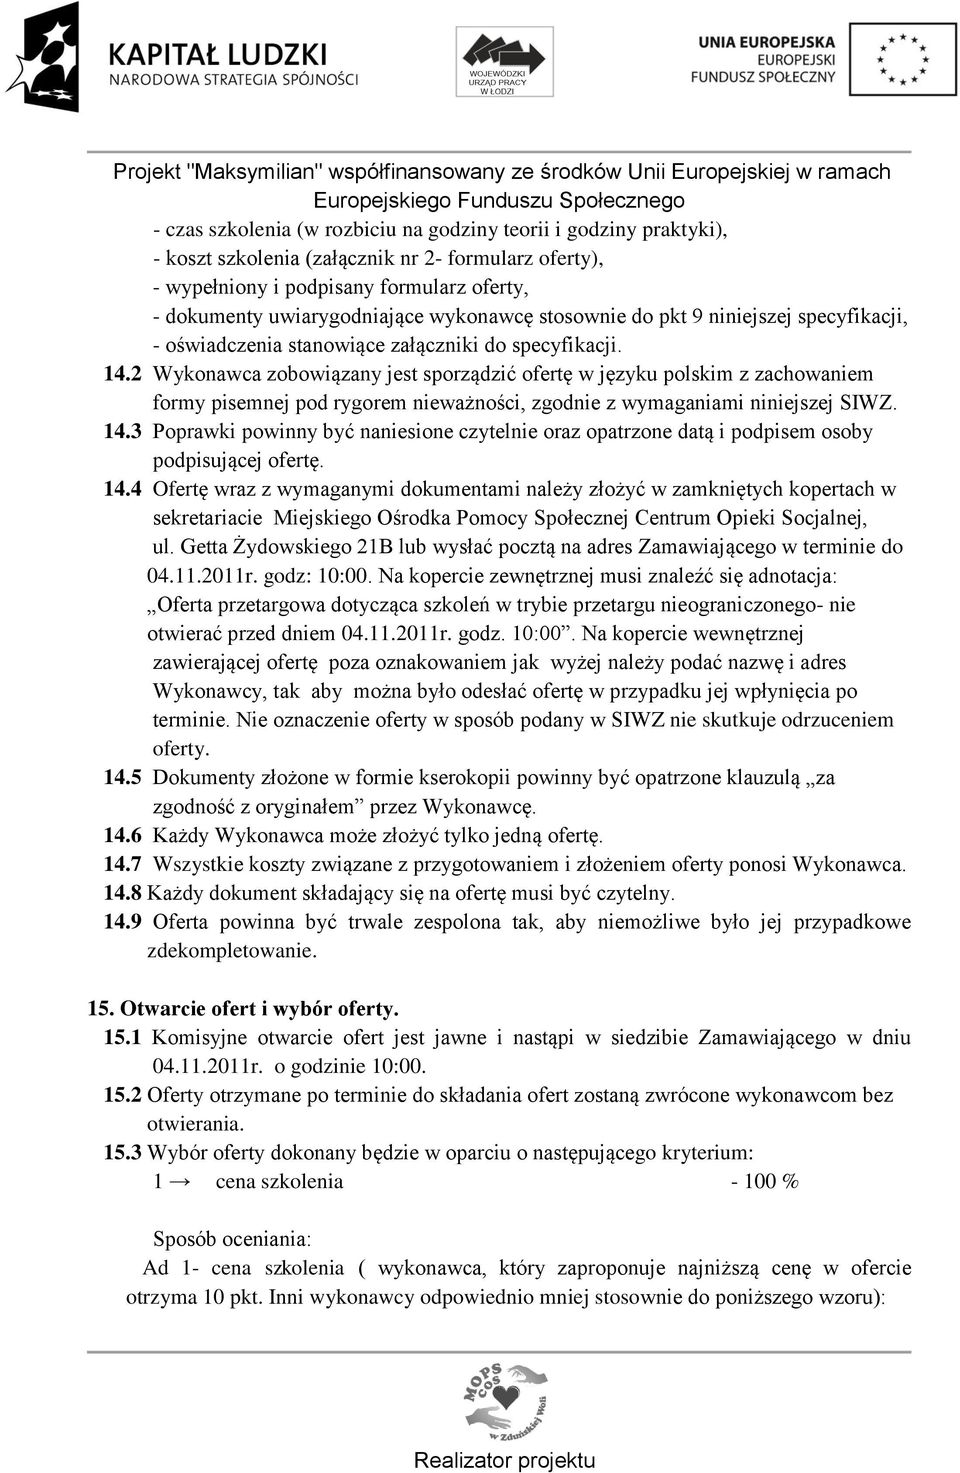 2 Wykonawca zobowiązany jest sporządzić ofertę w języku polskim z zachowaniem formy pisemnej pod rygorem nieważności, zgodnie z wymaganiami niniejszej SIWZ. 14.